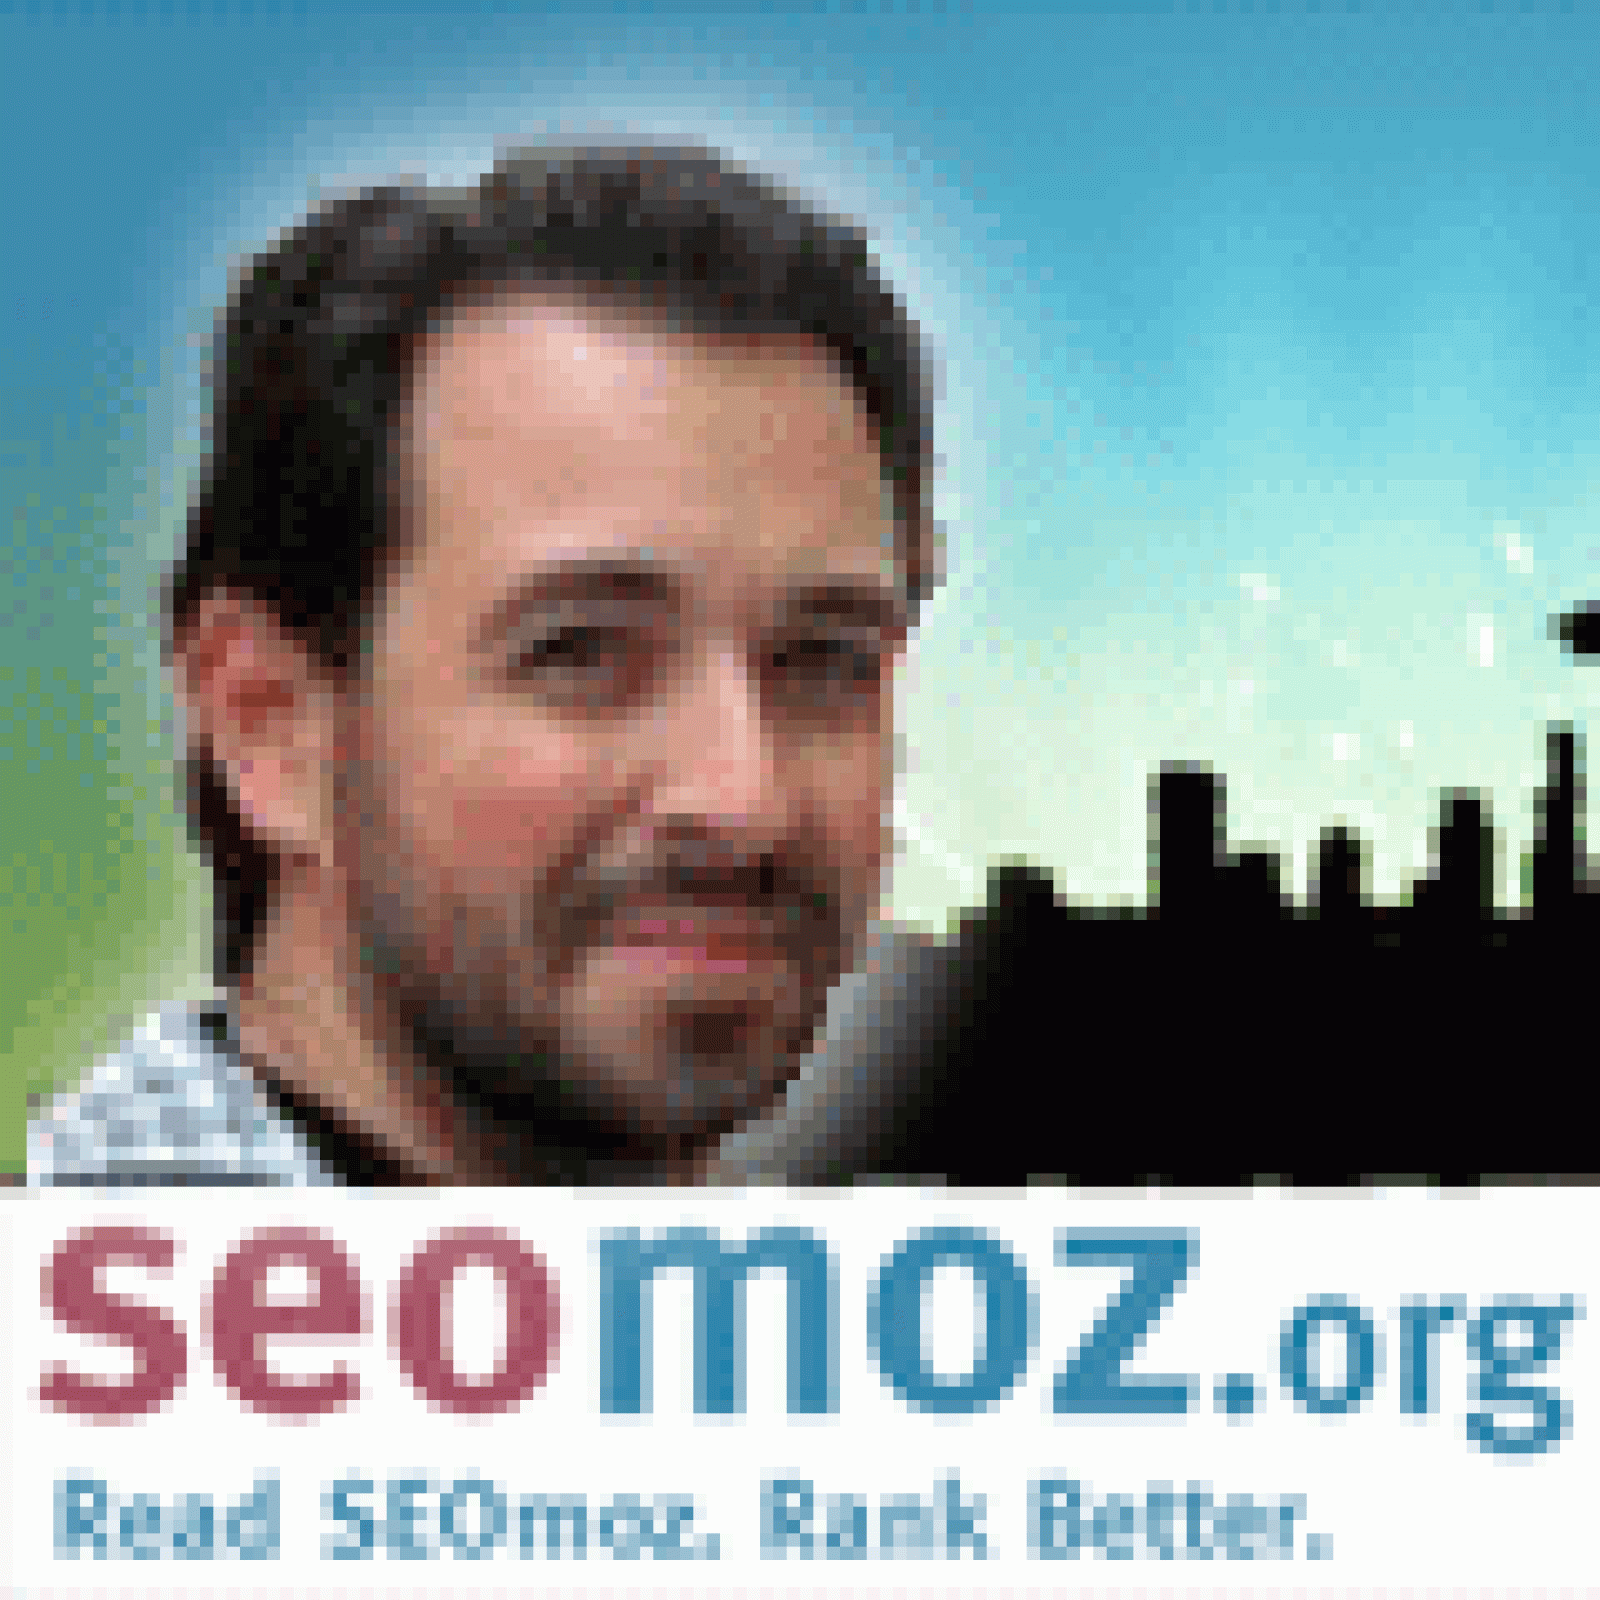 ホームページをgoogle検索に引っかからないようにする12の方法 Moz Seoとインバウンドマーケティングの実践情報 Web担当者forum